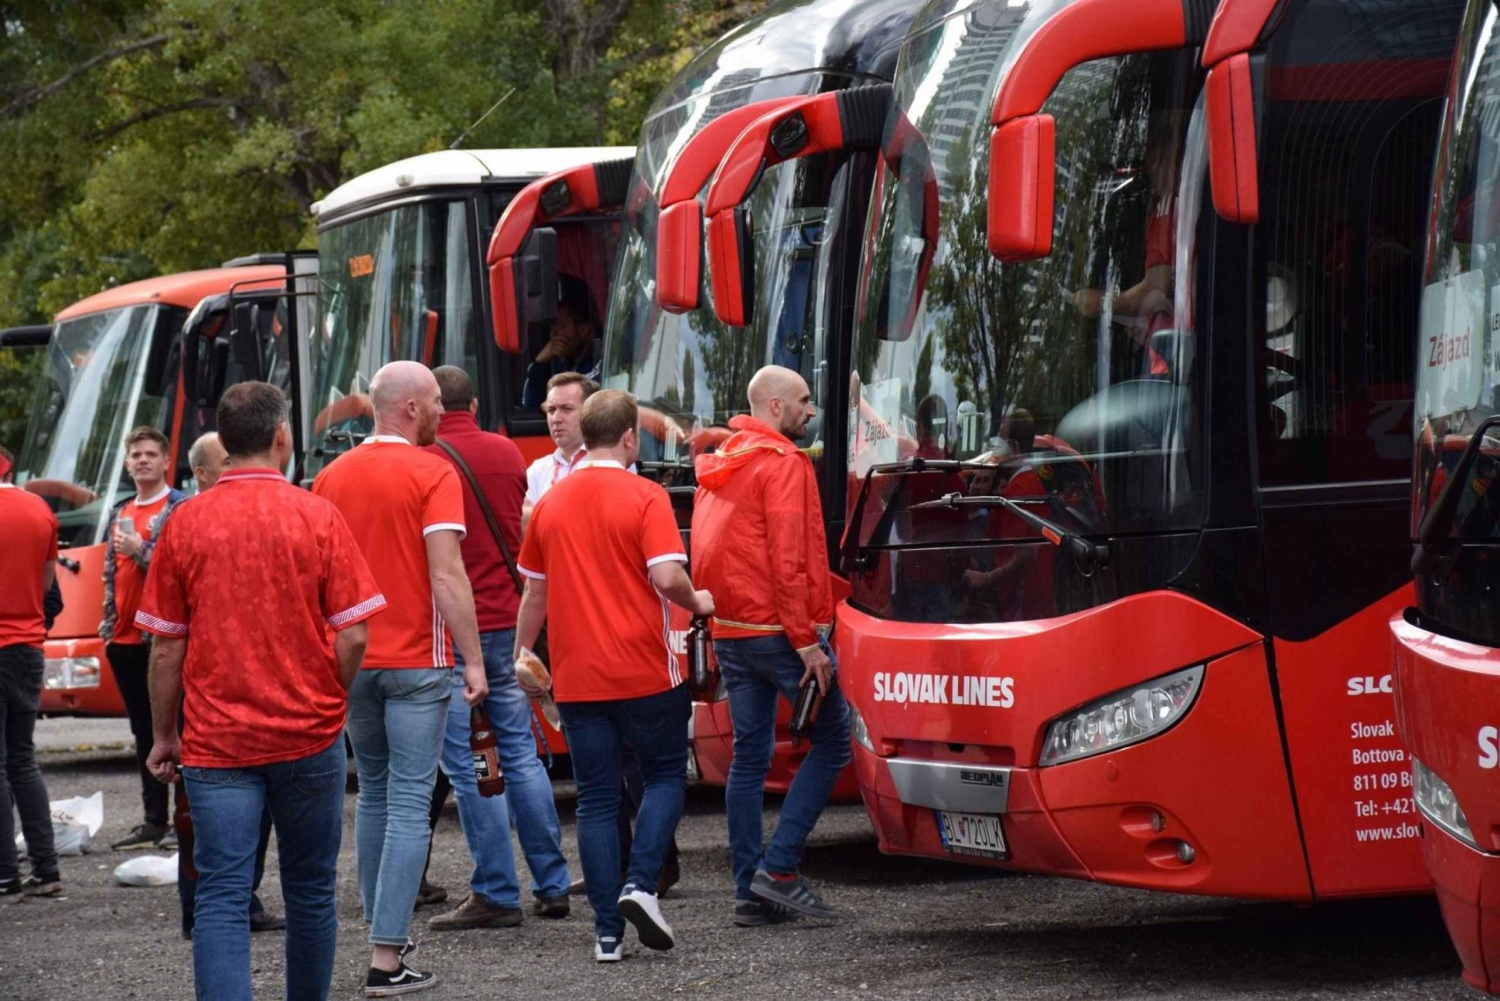 Bratysława: Transfer autobusowy do/z lotniska w Wiedniu